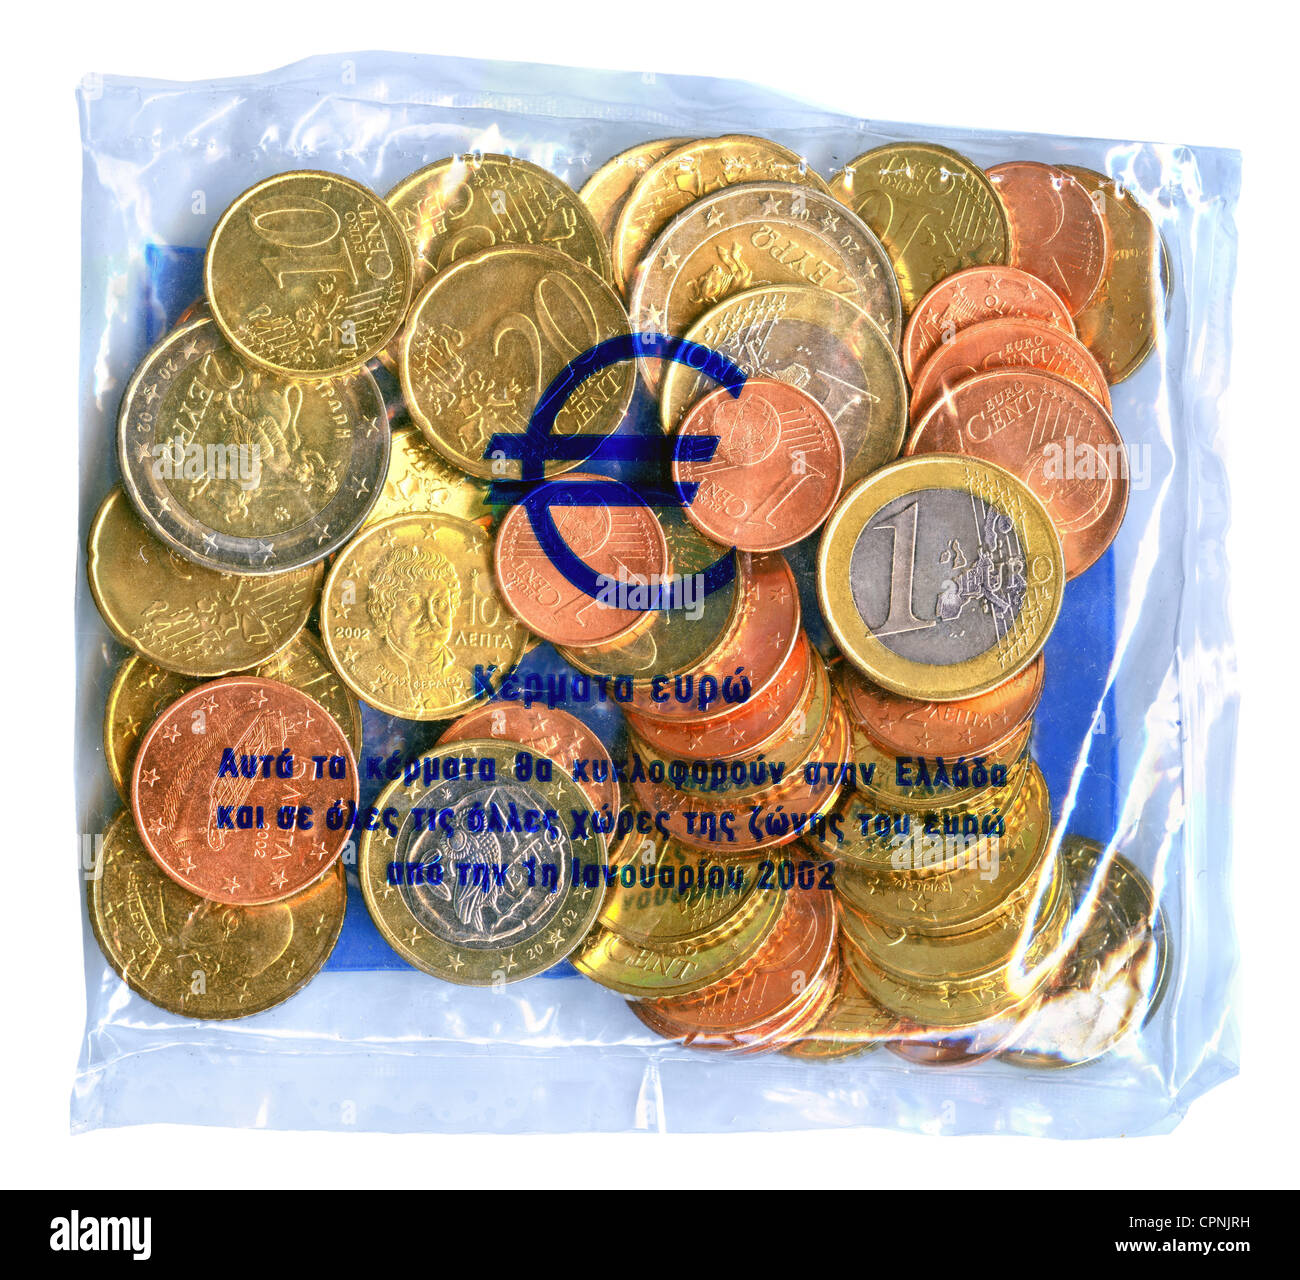 Geld / Finanzen,Münzen,Griechenland,Euro Starterkit Griechenland,Starterkit  von den Banken im Dezember 2001, Januar 2002 gestartet für 5000 Drachme an  Privatkunden,2002,Euro-Münzen,Cent,Euro,im Nennwert von 14.67 Euro,Cent-Münze,Währungsumrechnung  ...